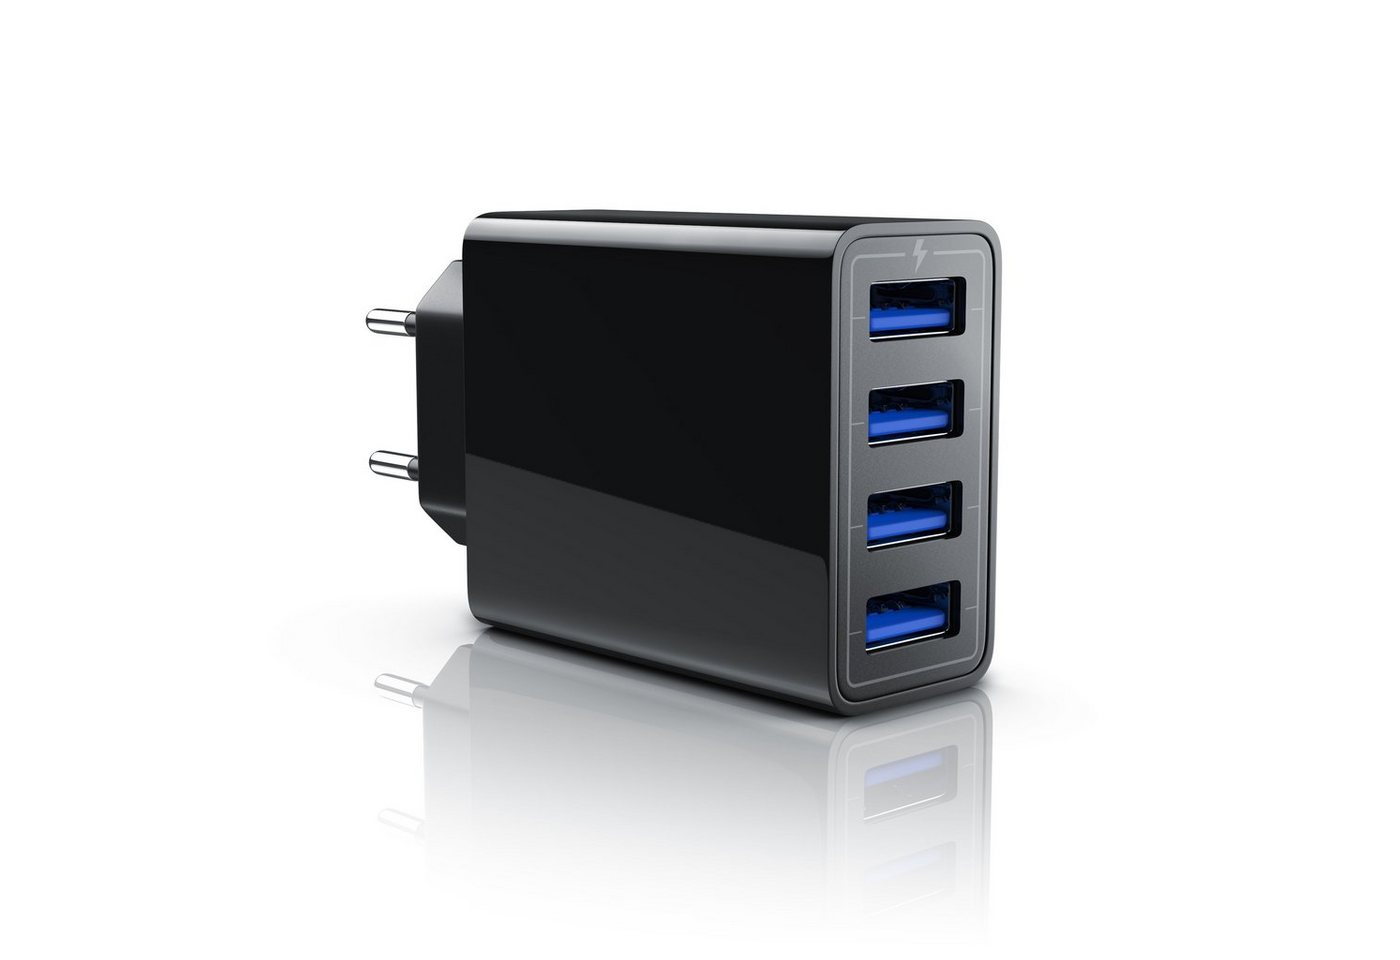 Aplic USB-Ladegerät (5000 mA, 4-Port Netzteil für Handy, Tablet uvm. 5000mA, 2,4A Max. je Port, 25W) von Aplic